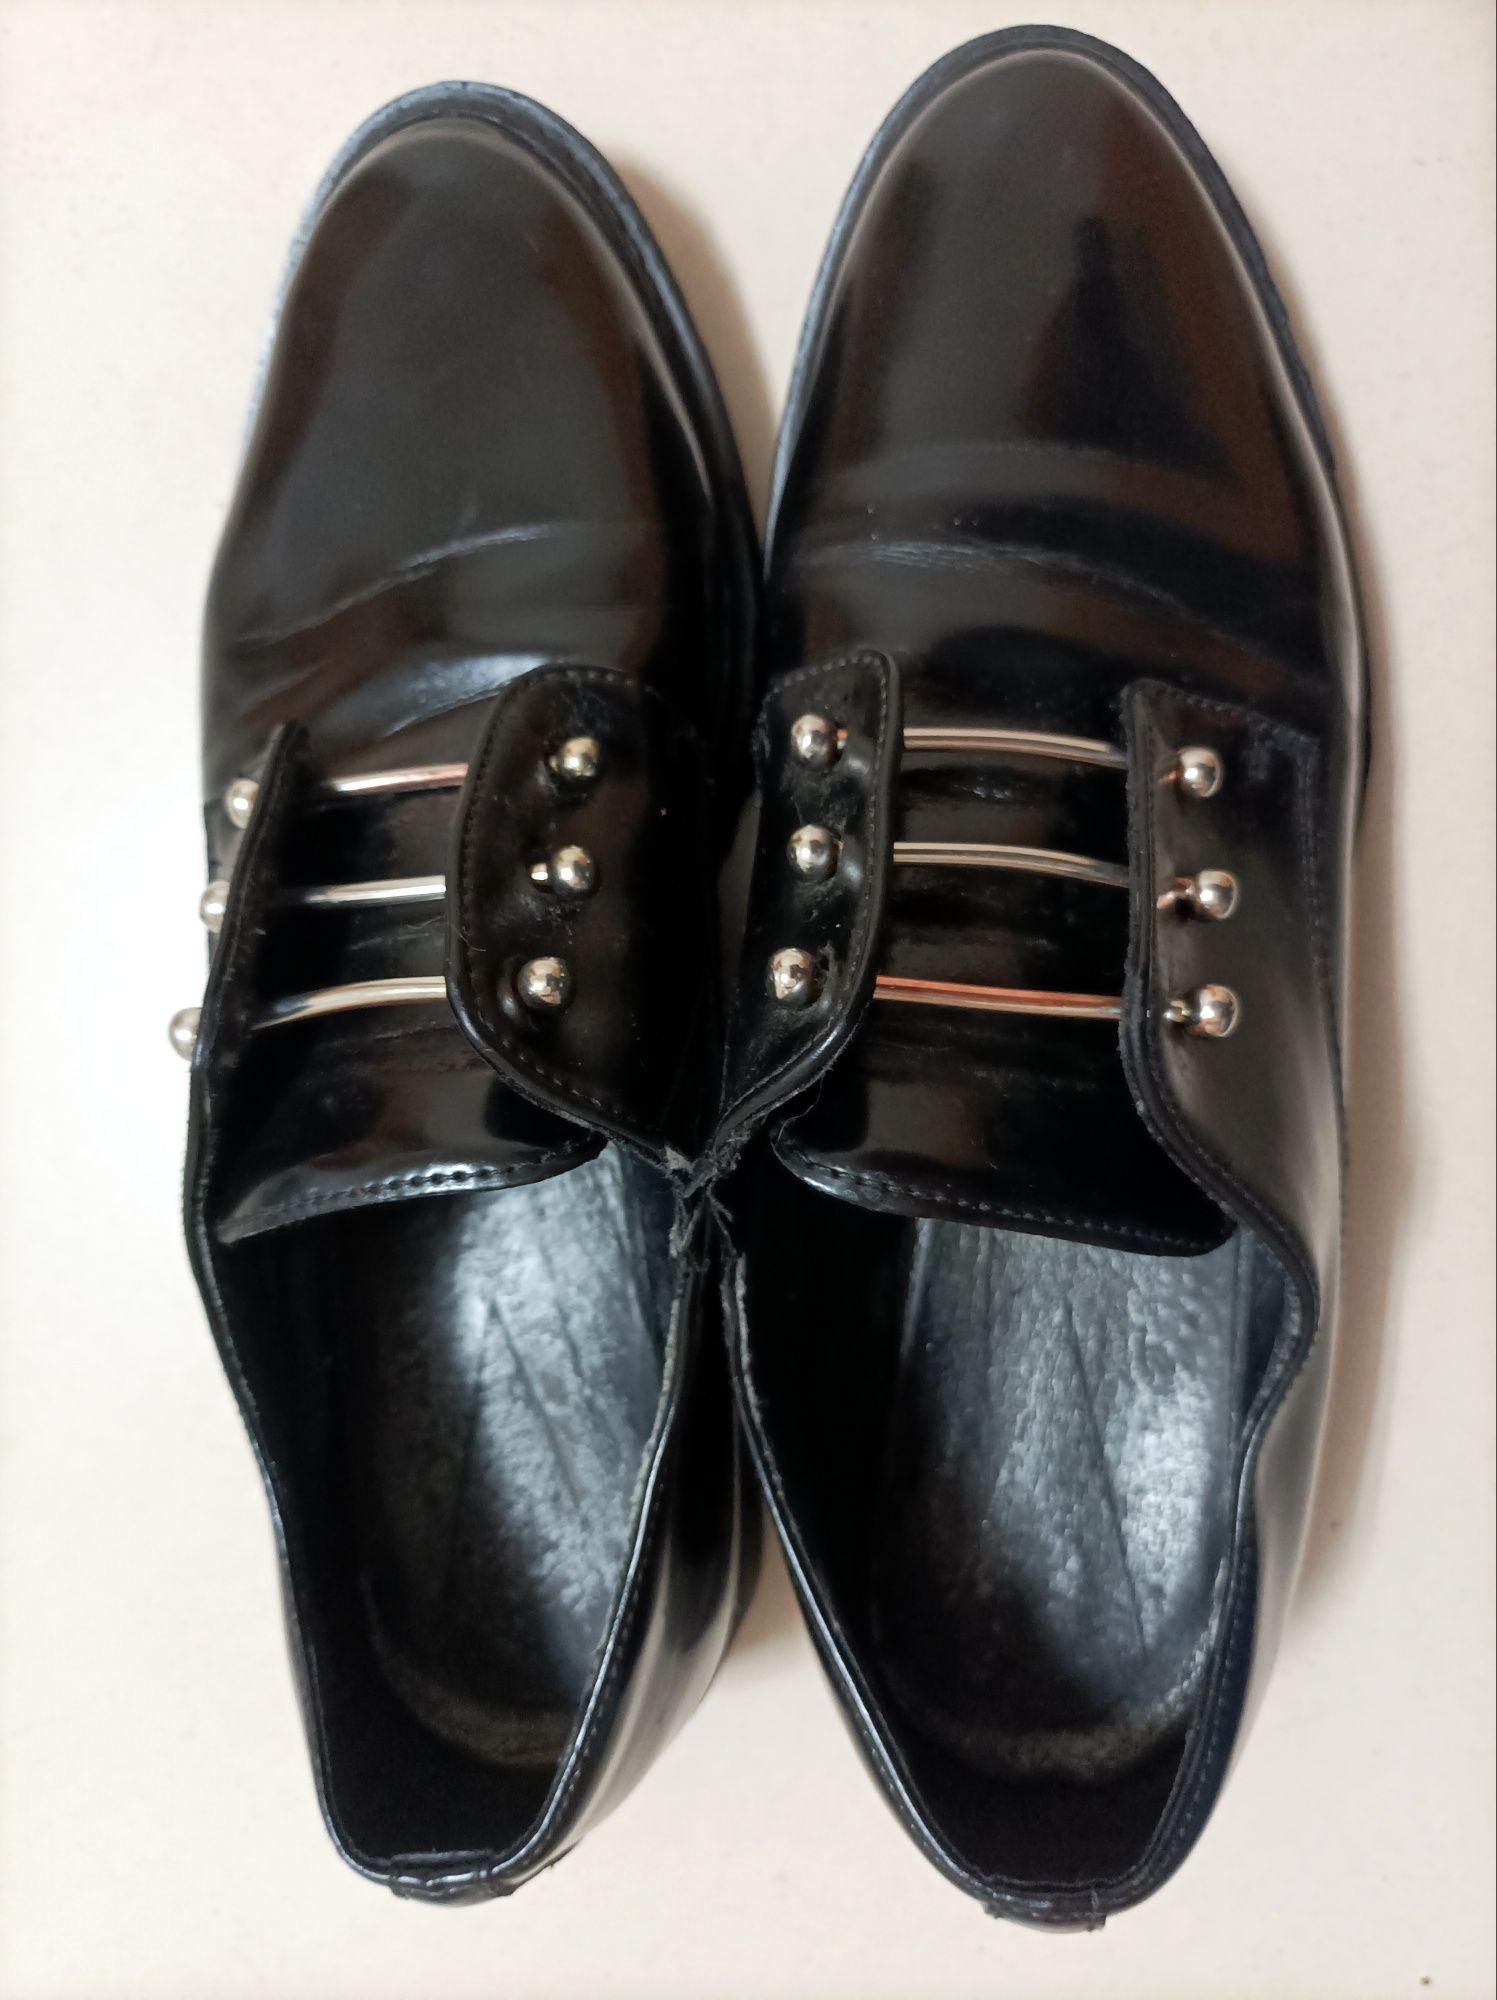 Sapatos pretos com atacadores metálicos marca Cult (T. 39)